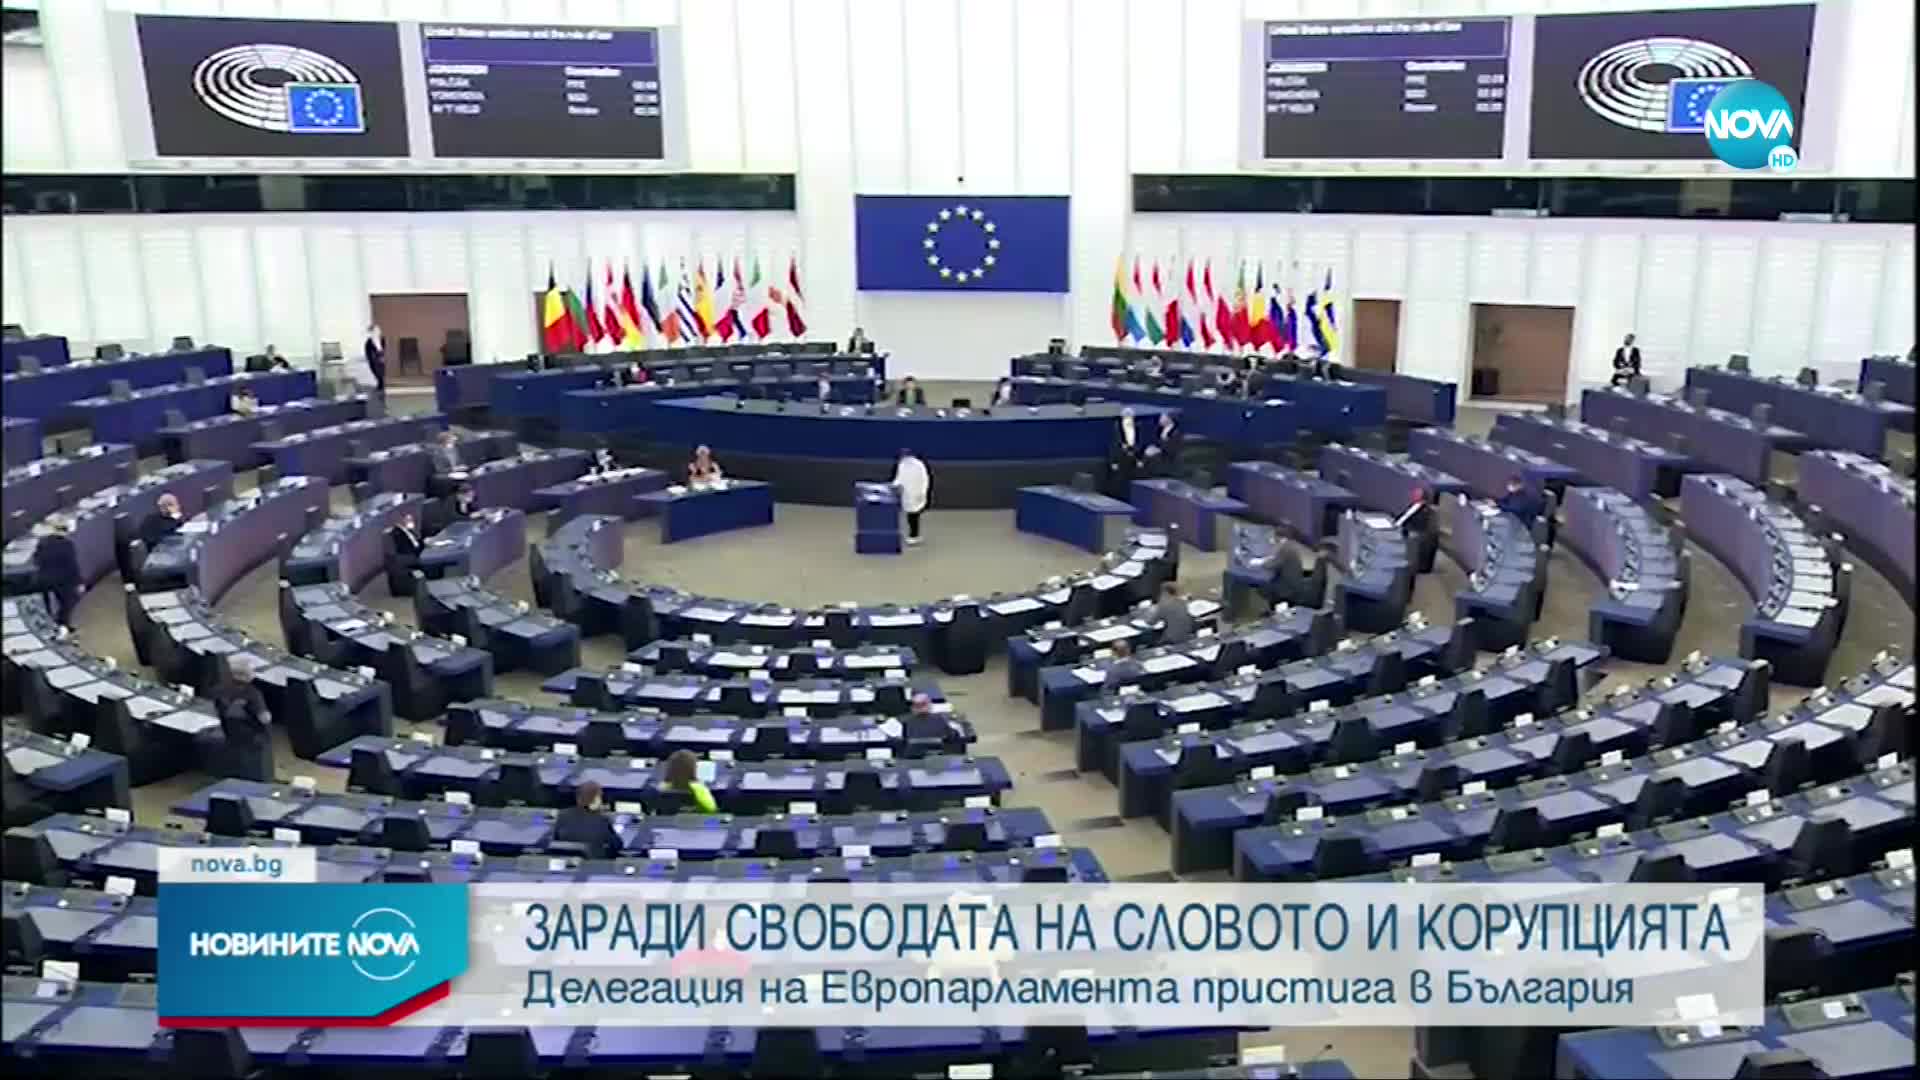 Делегация на Европарламента пристига в България